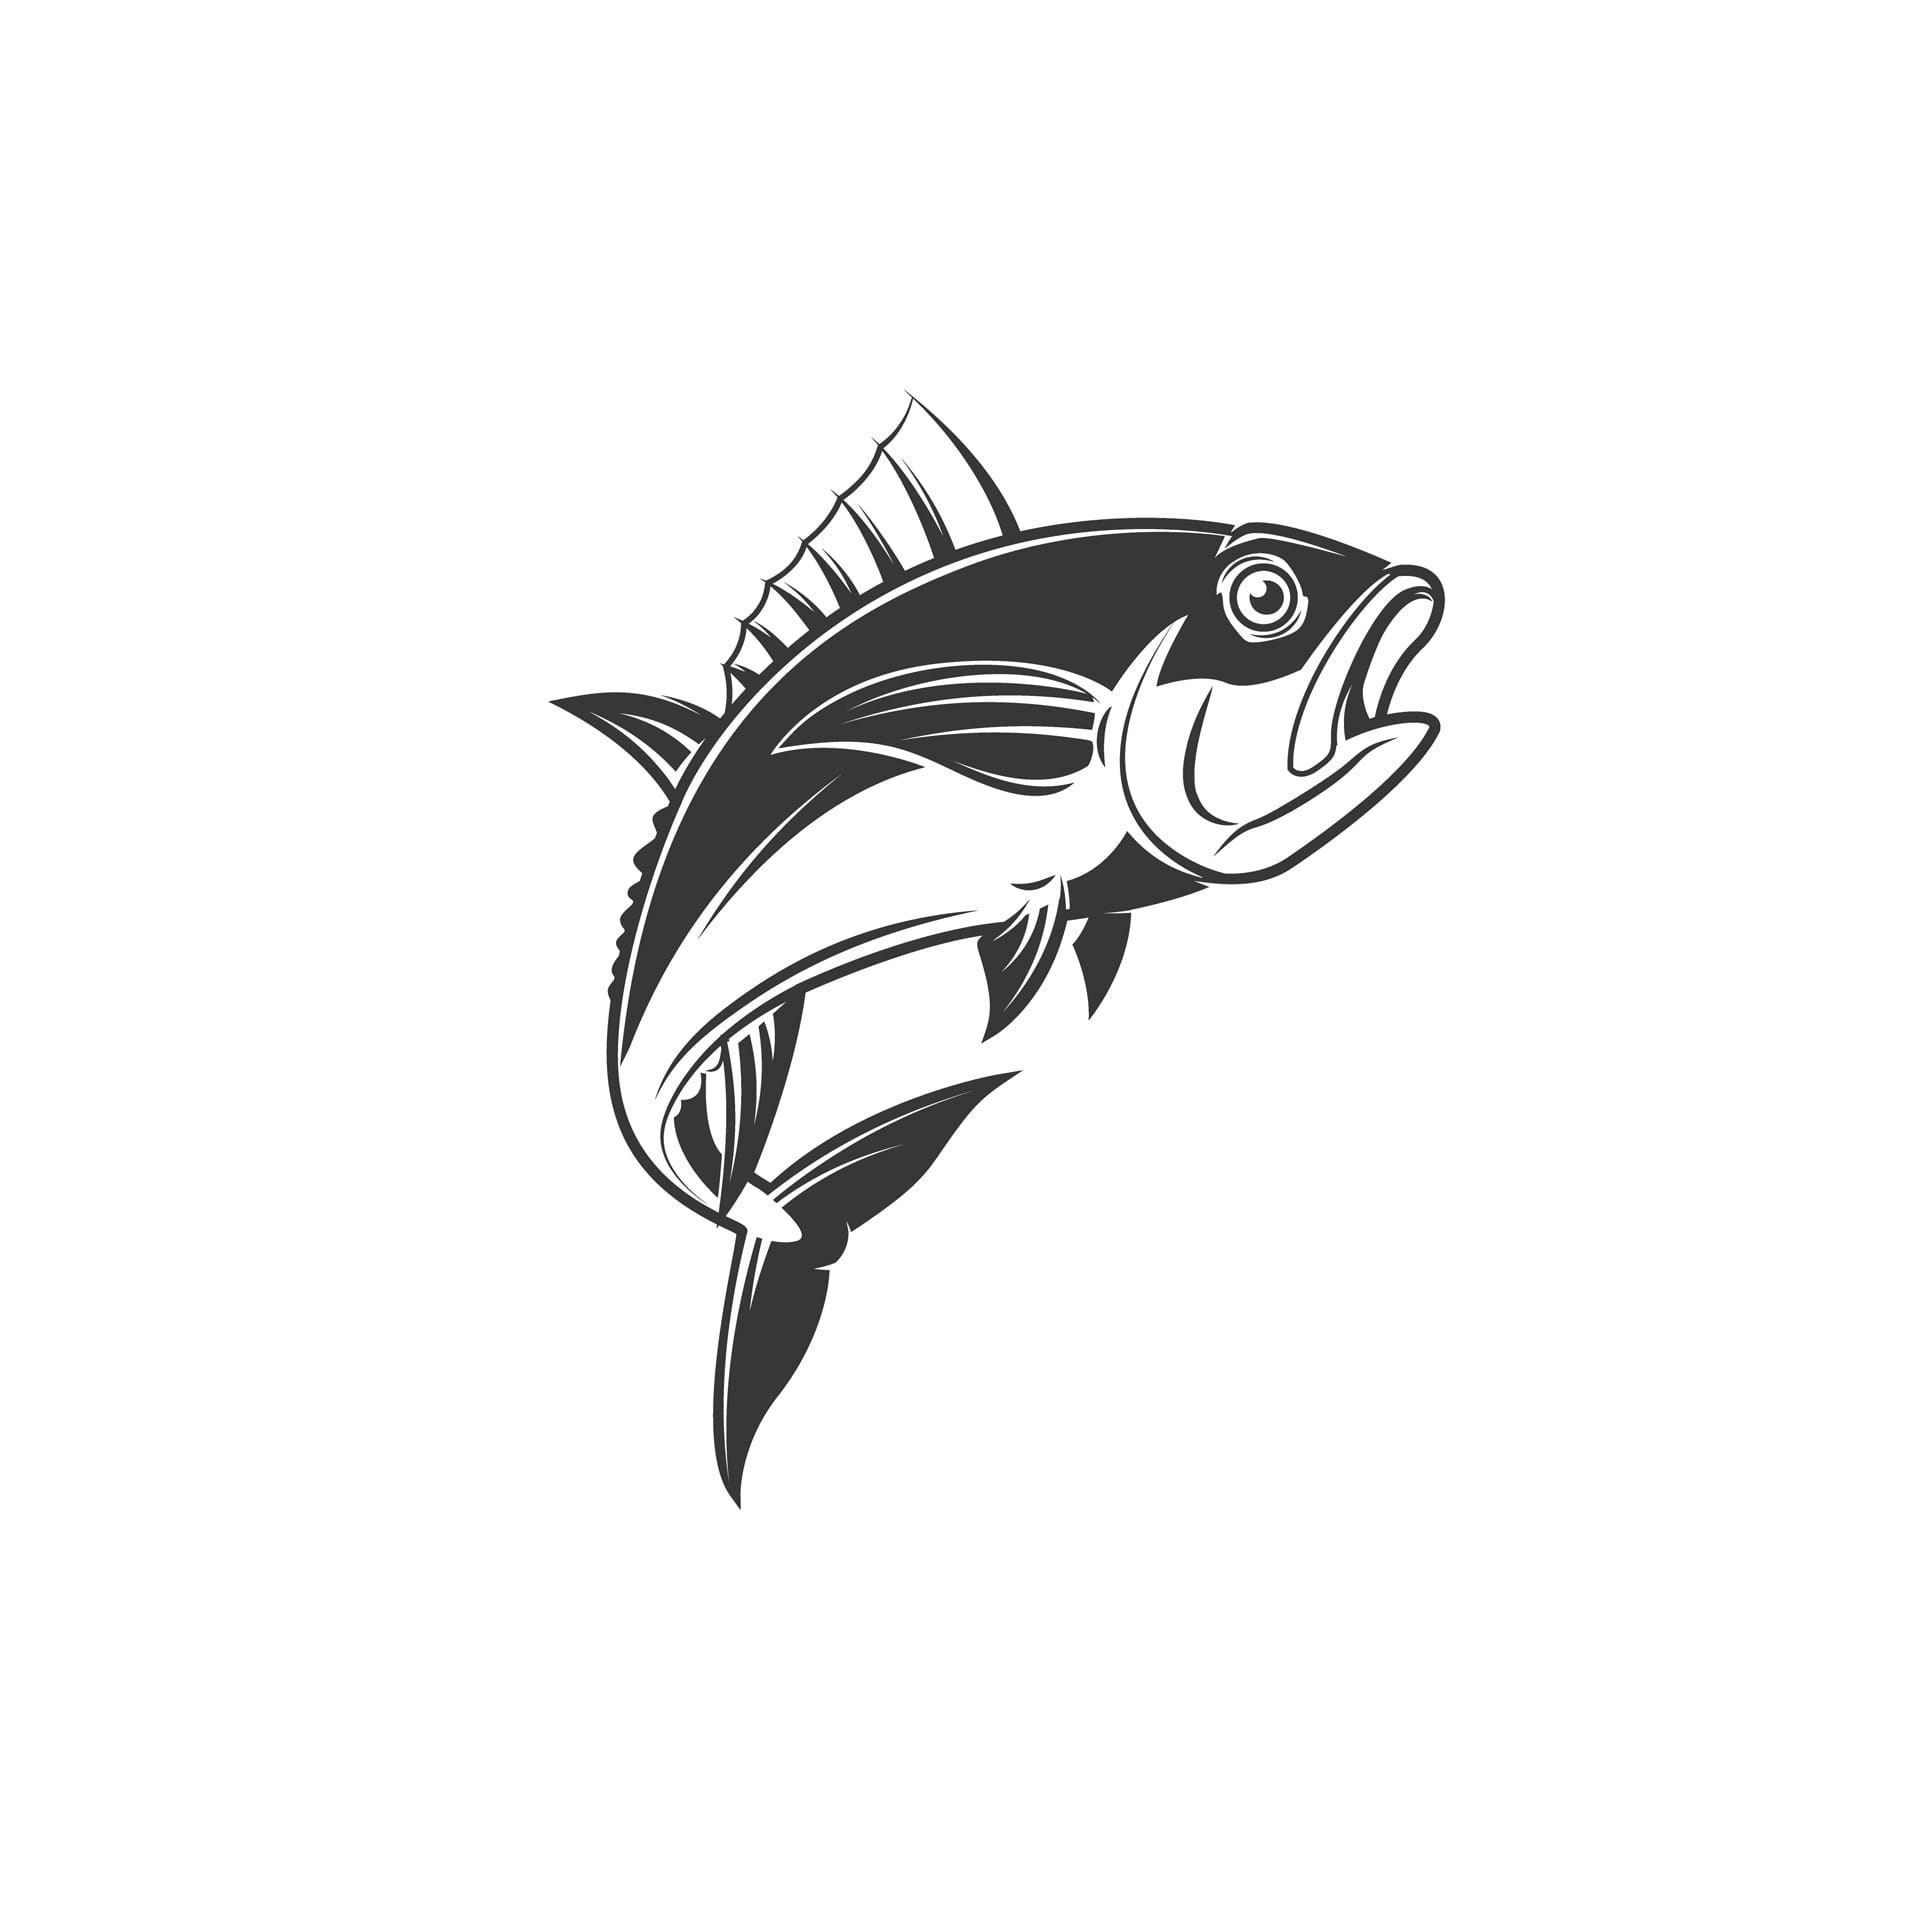 Tuna hand draw image fish profile picture